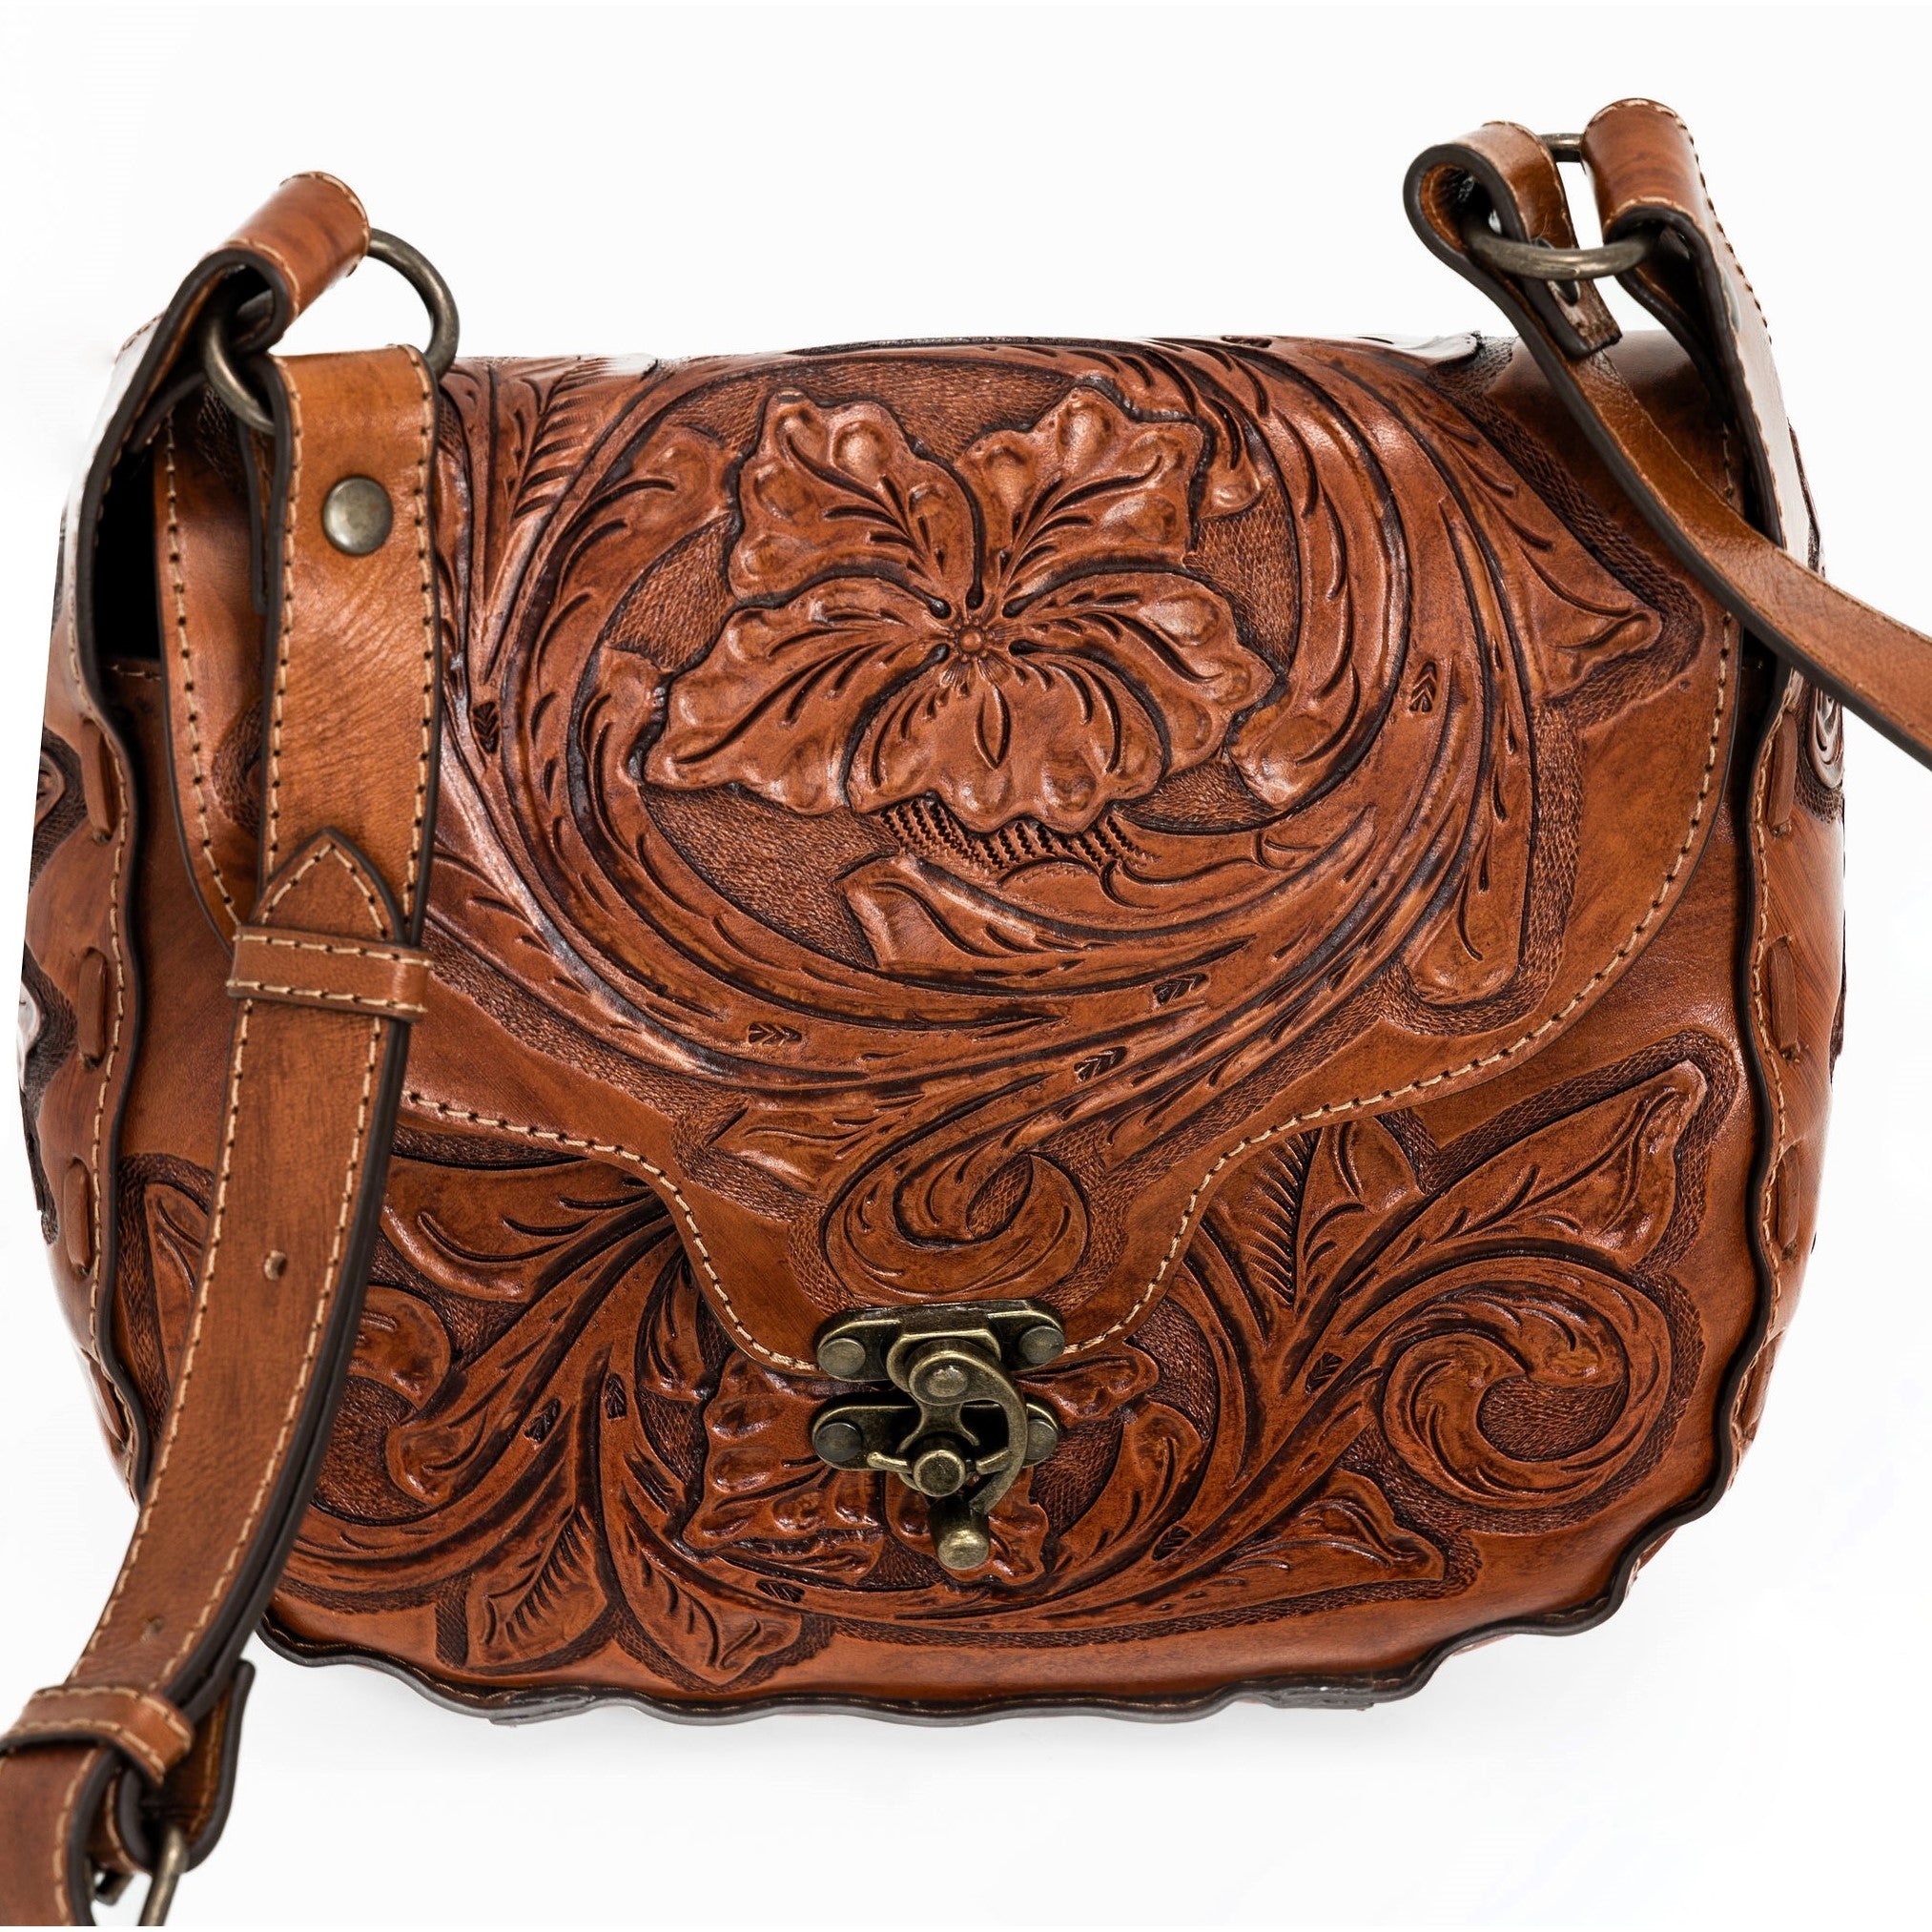 Sophia Saddle Bag in Chestnut